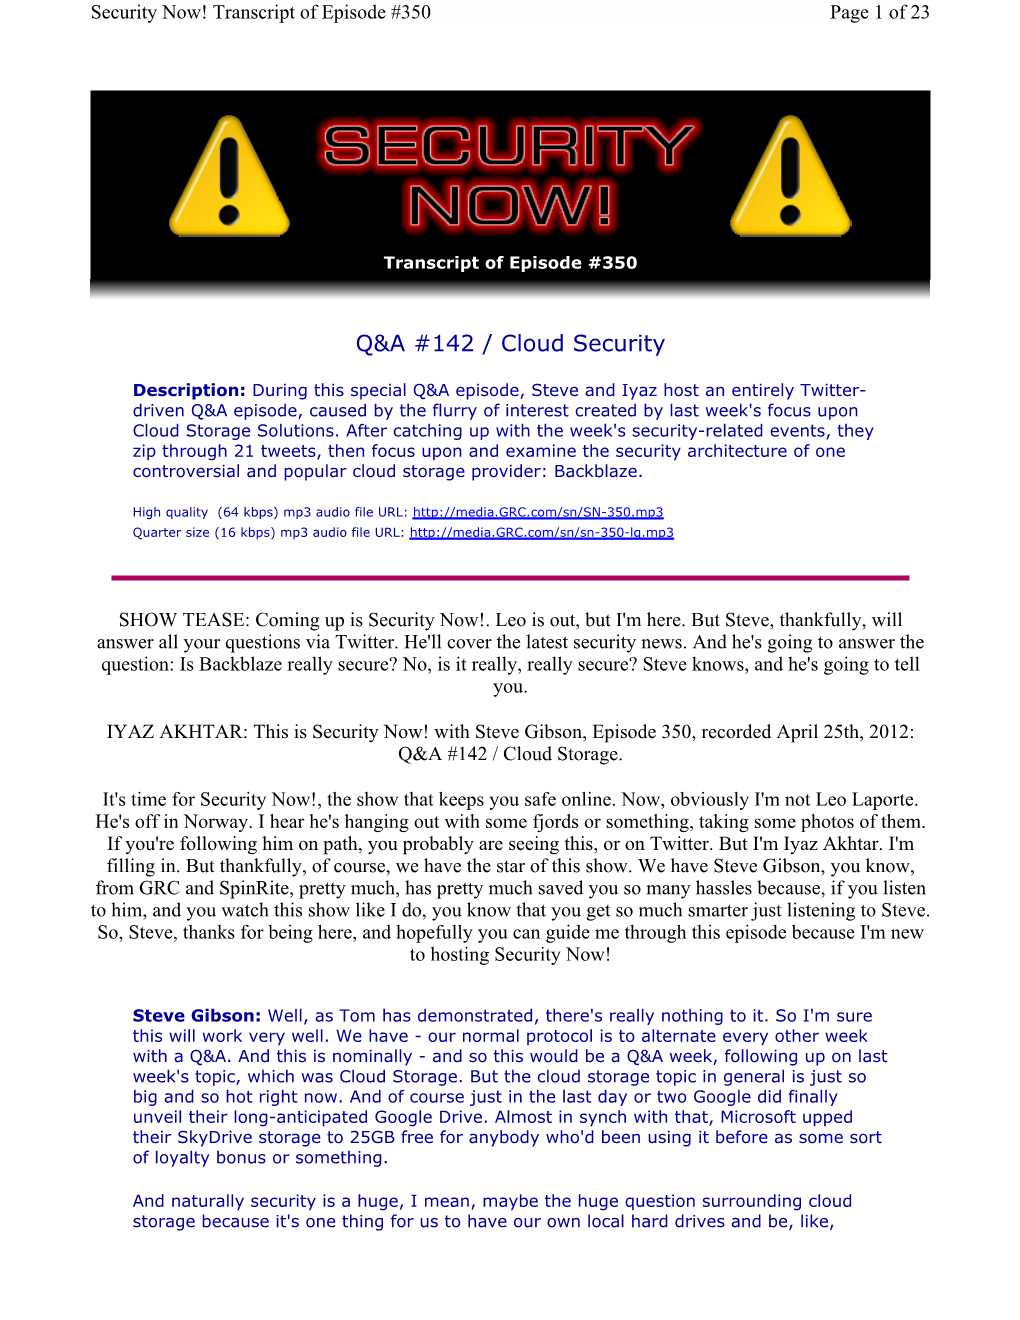 Q&A #142 / Cloud Security